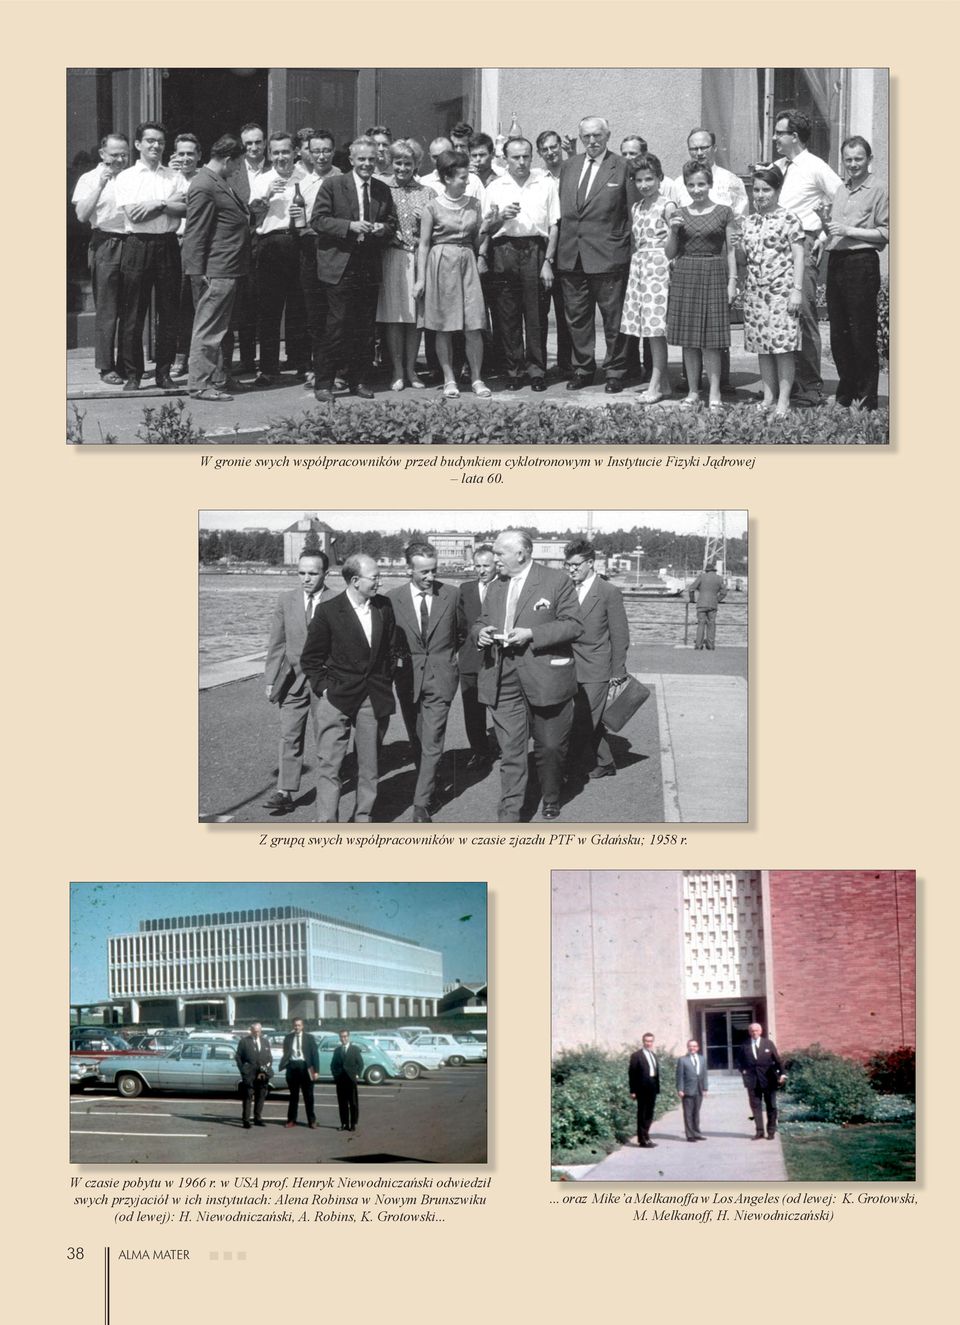 Henryk Niewodniczański odwiedził swych przyjaciół w ich instytutach: Alena Robinsa w Nowym Brunszwiku (od lewej): H.